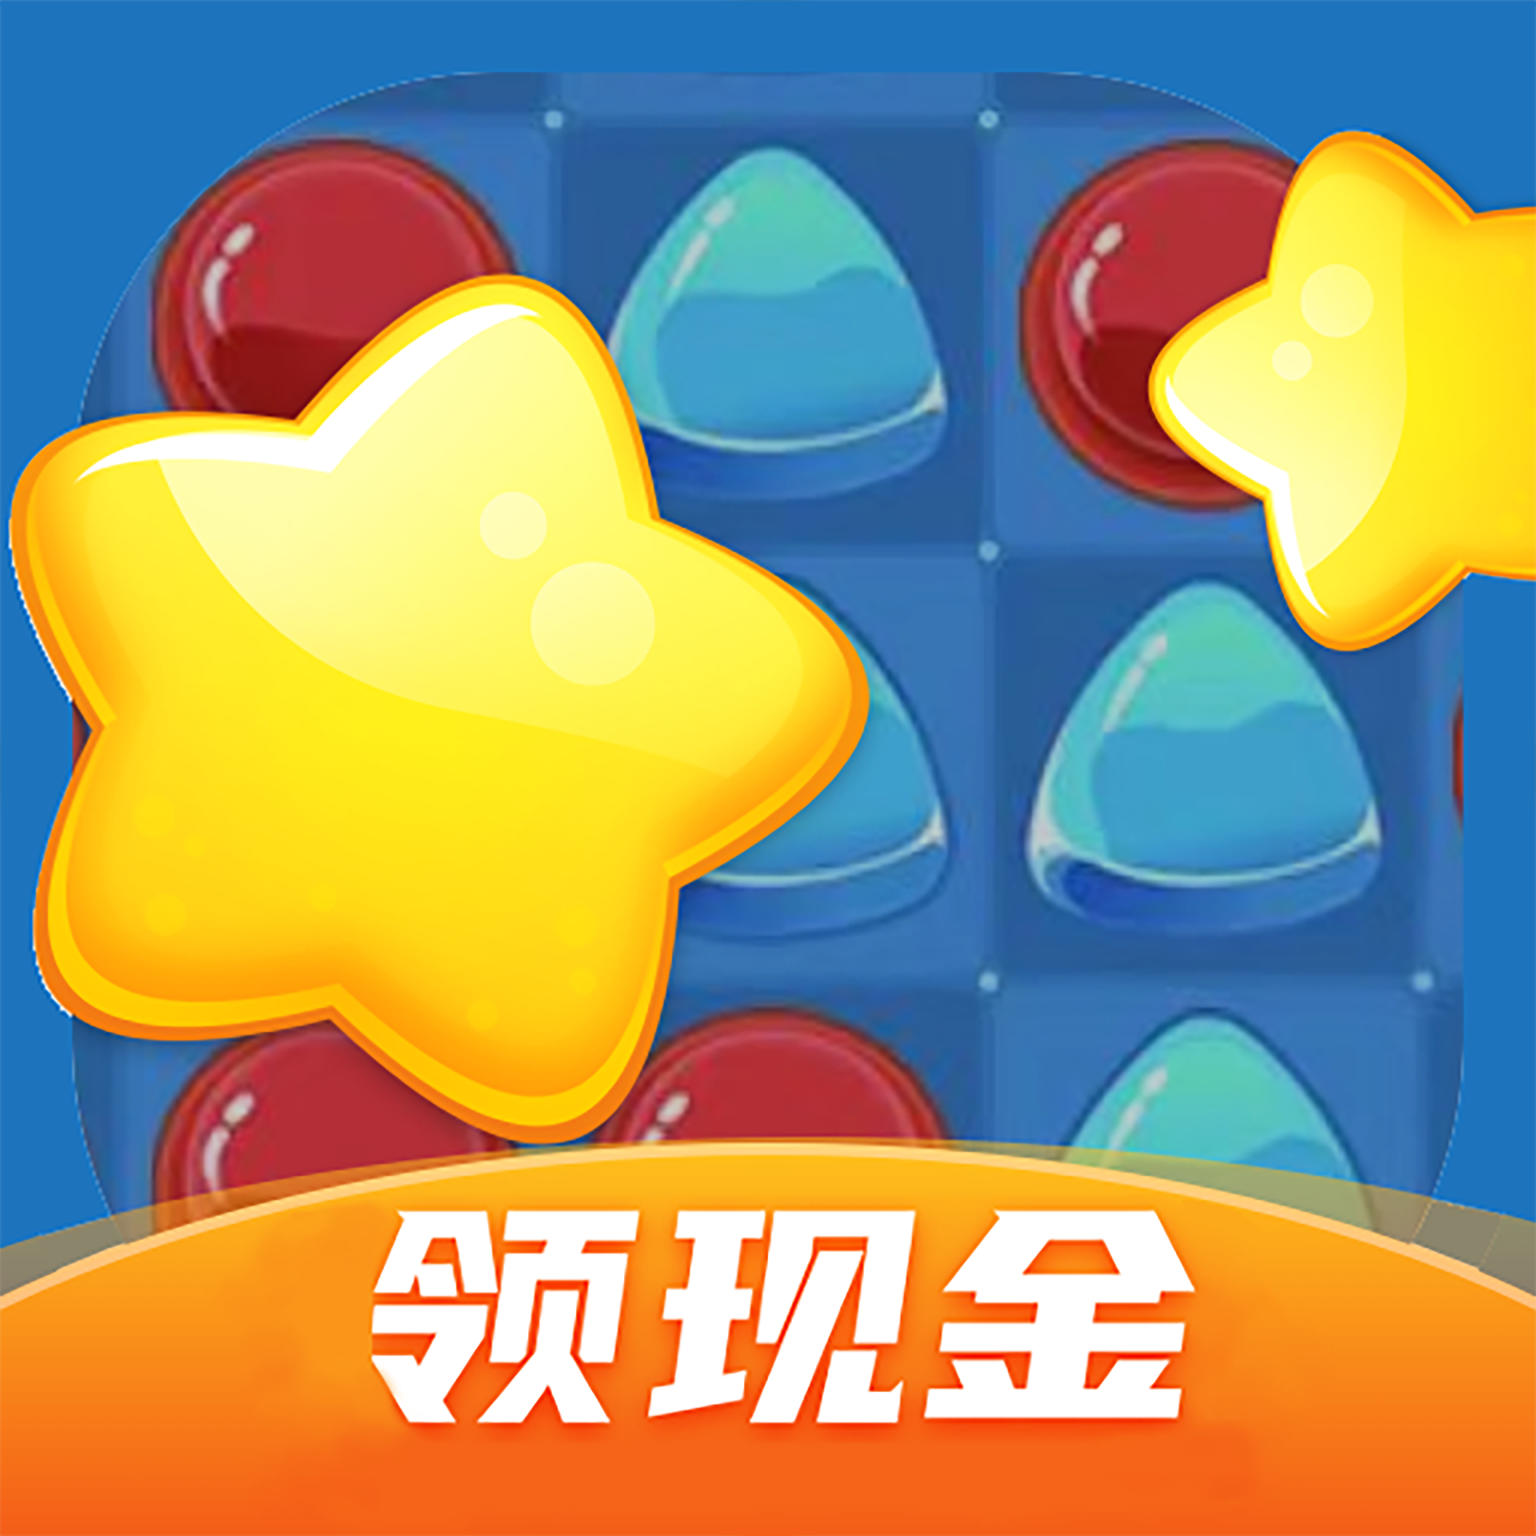 悦消消官方红包版游戏下载 v1.0.1 领现金安卓版